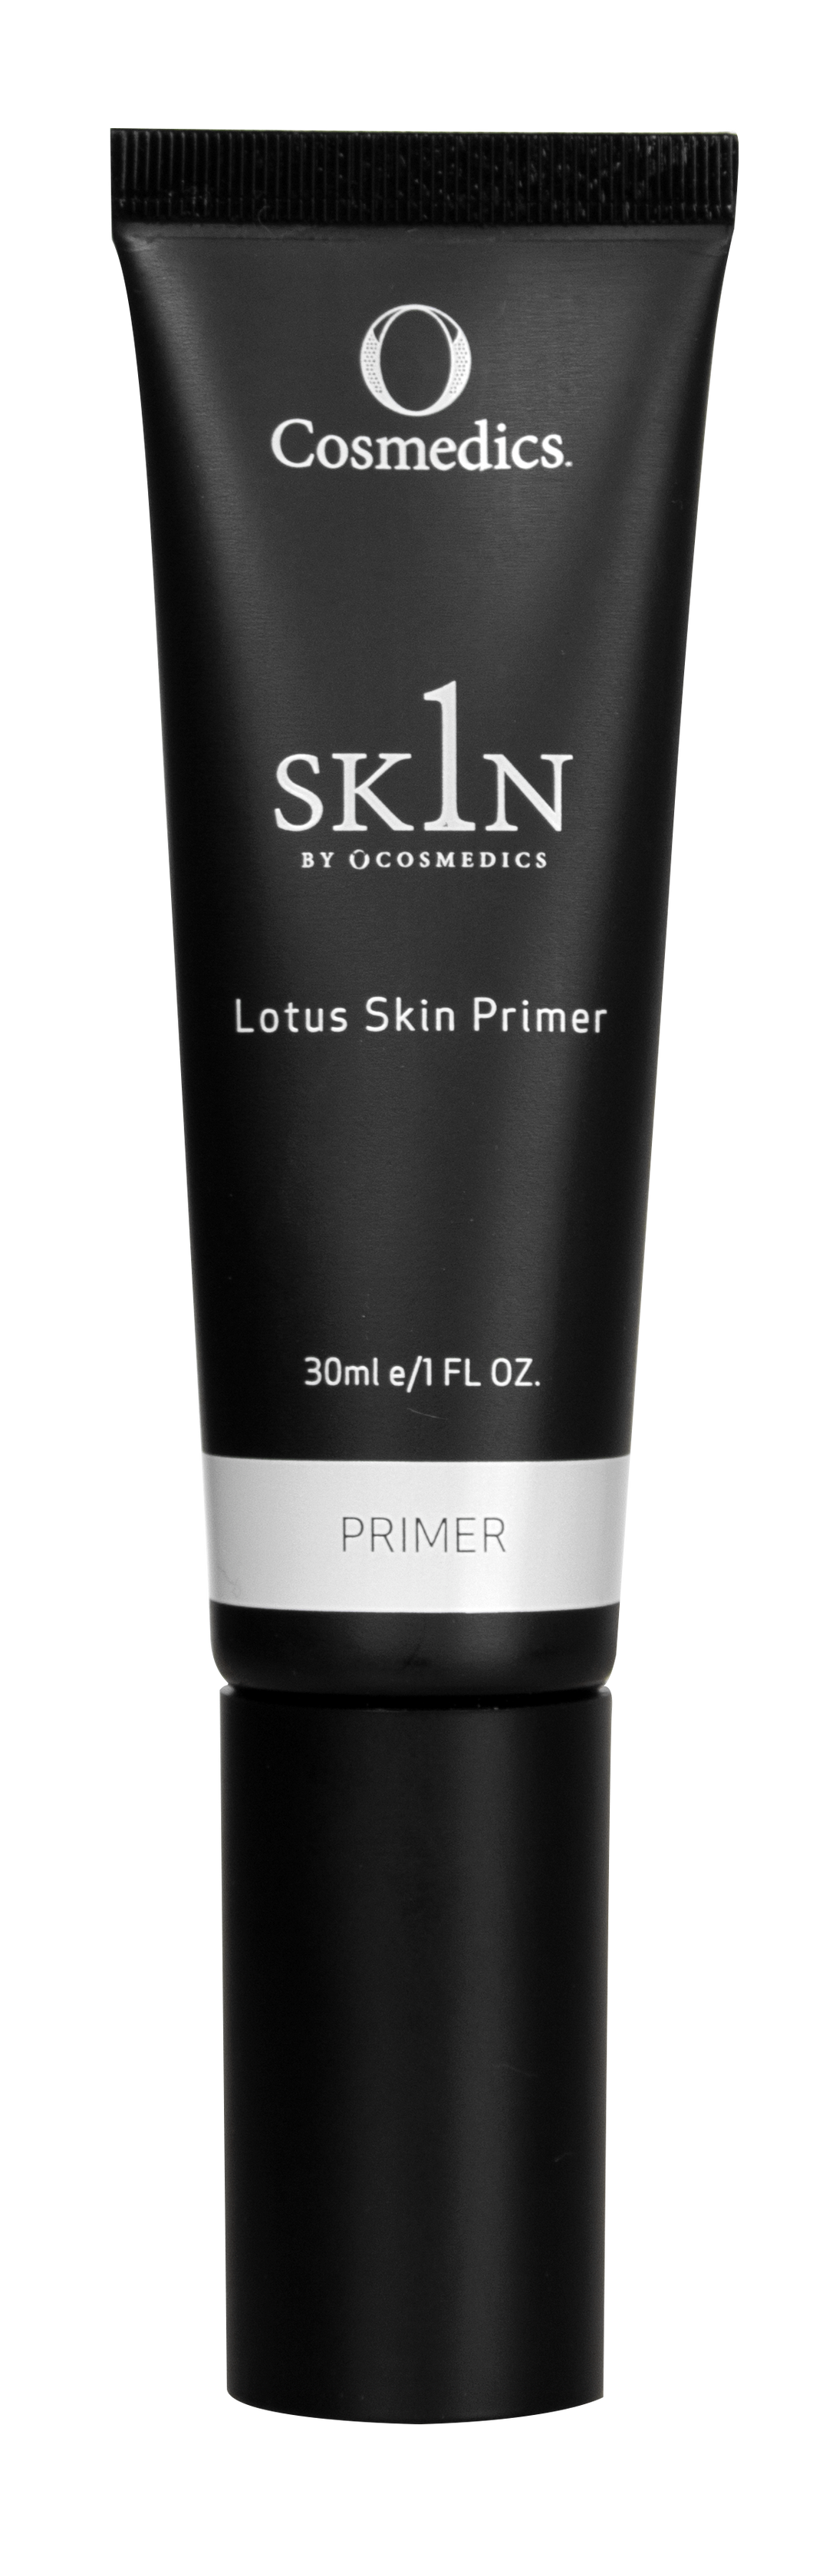 Lotus Skin Primer 30ml